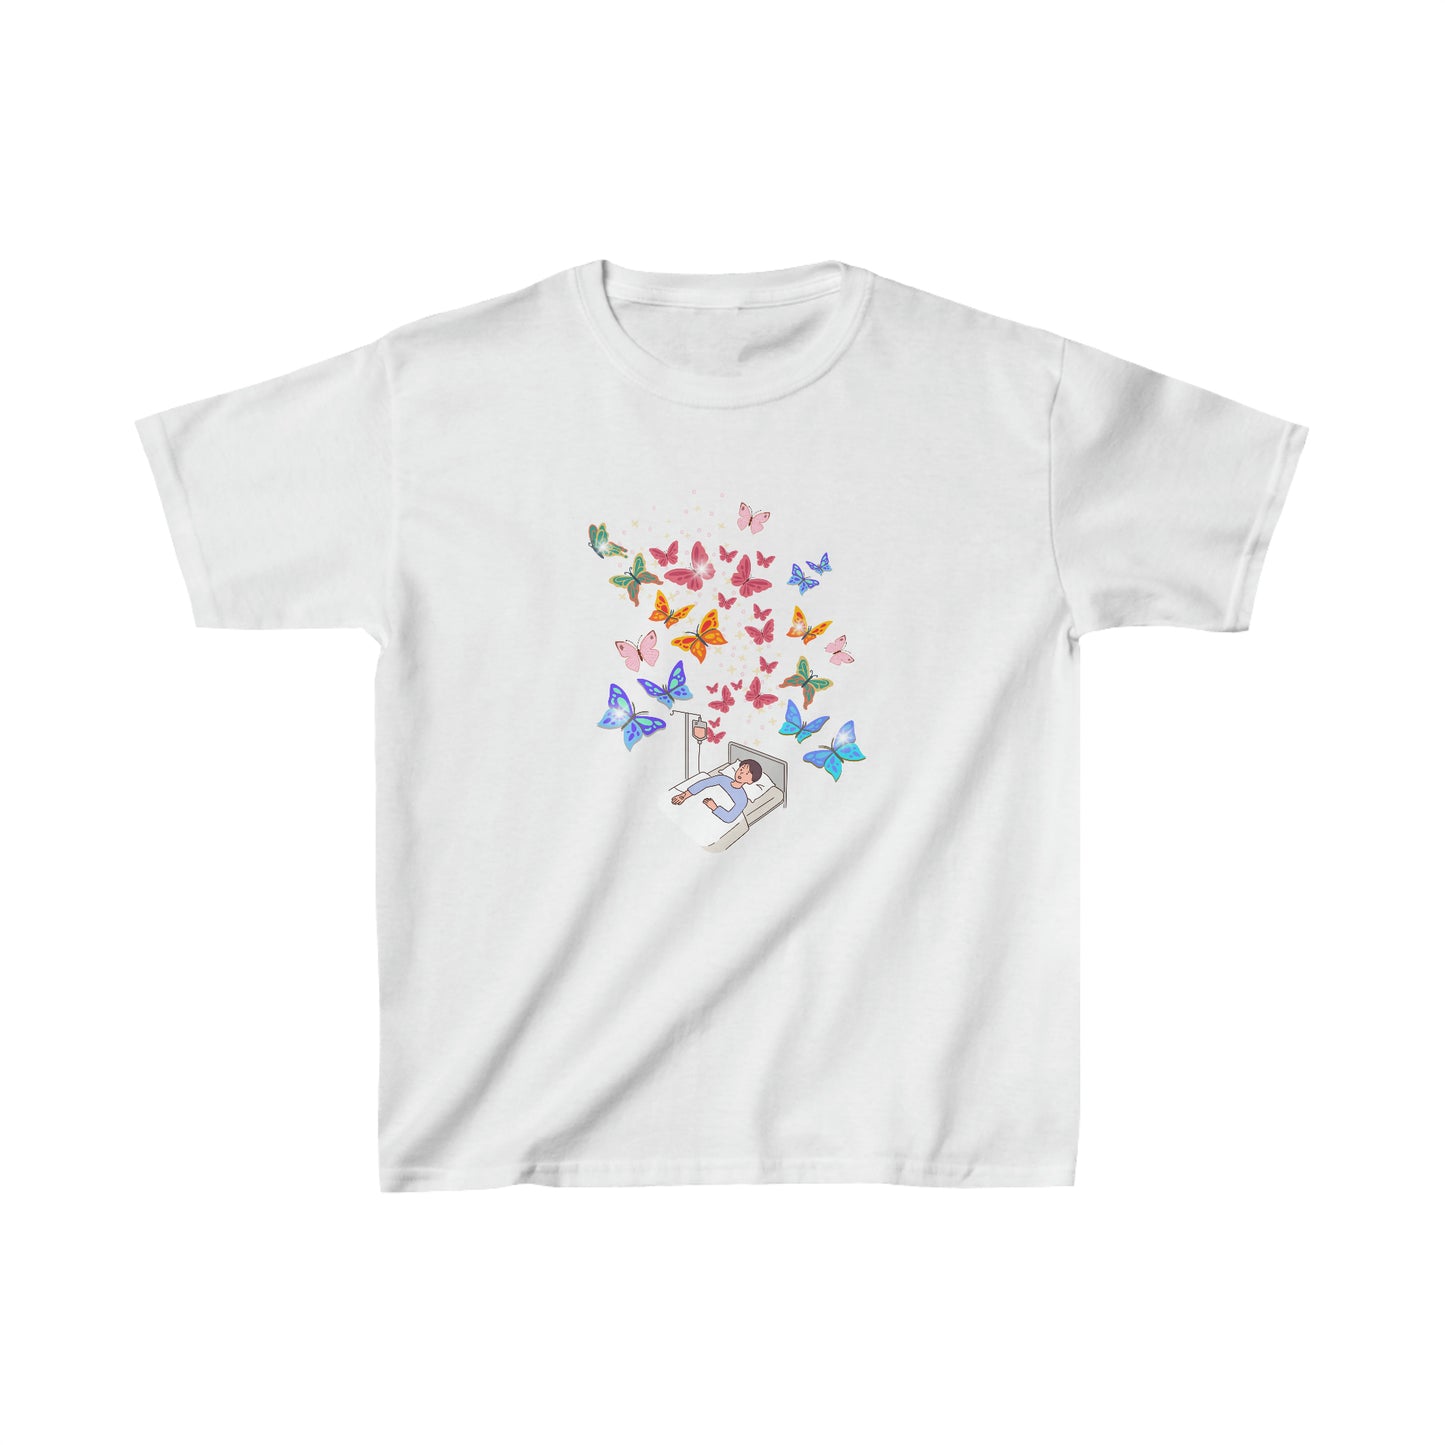 T-shirt au profit de la fondation Sainte-Justine - enfant